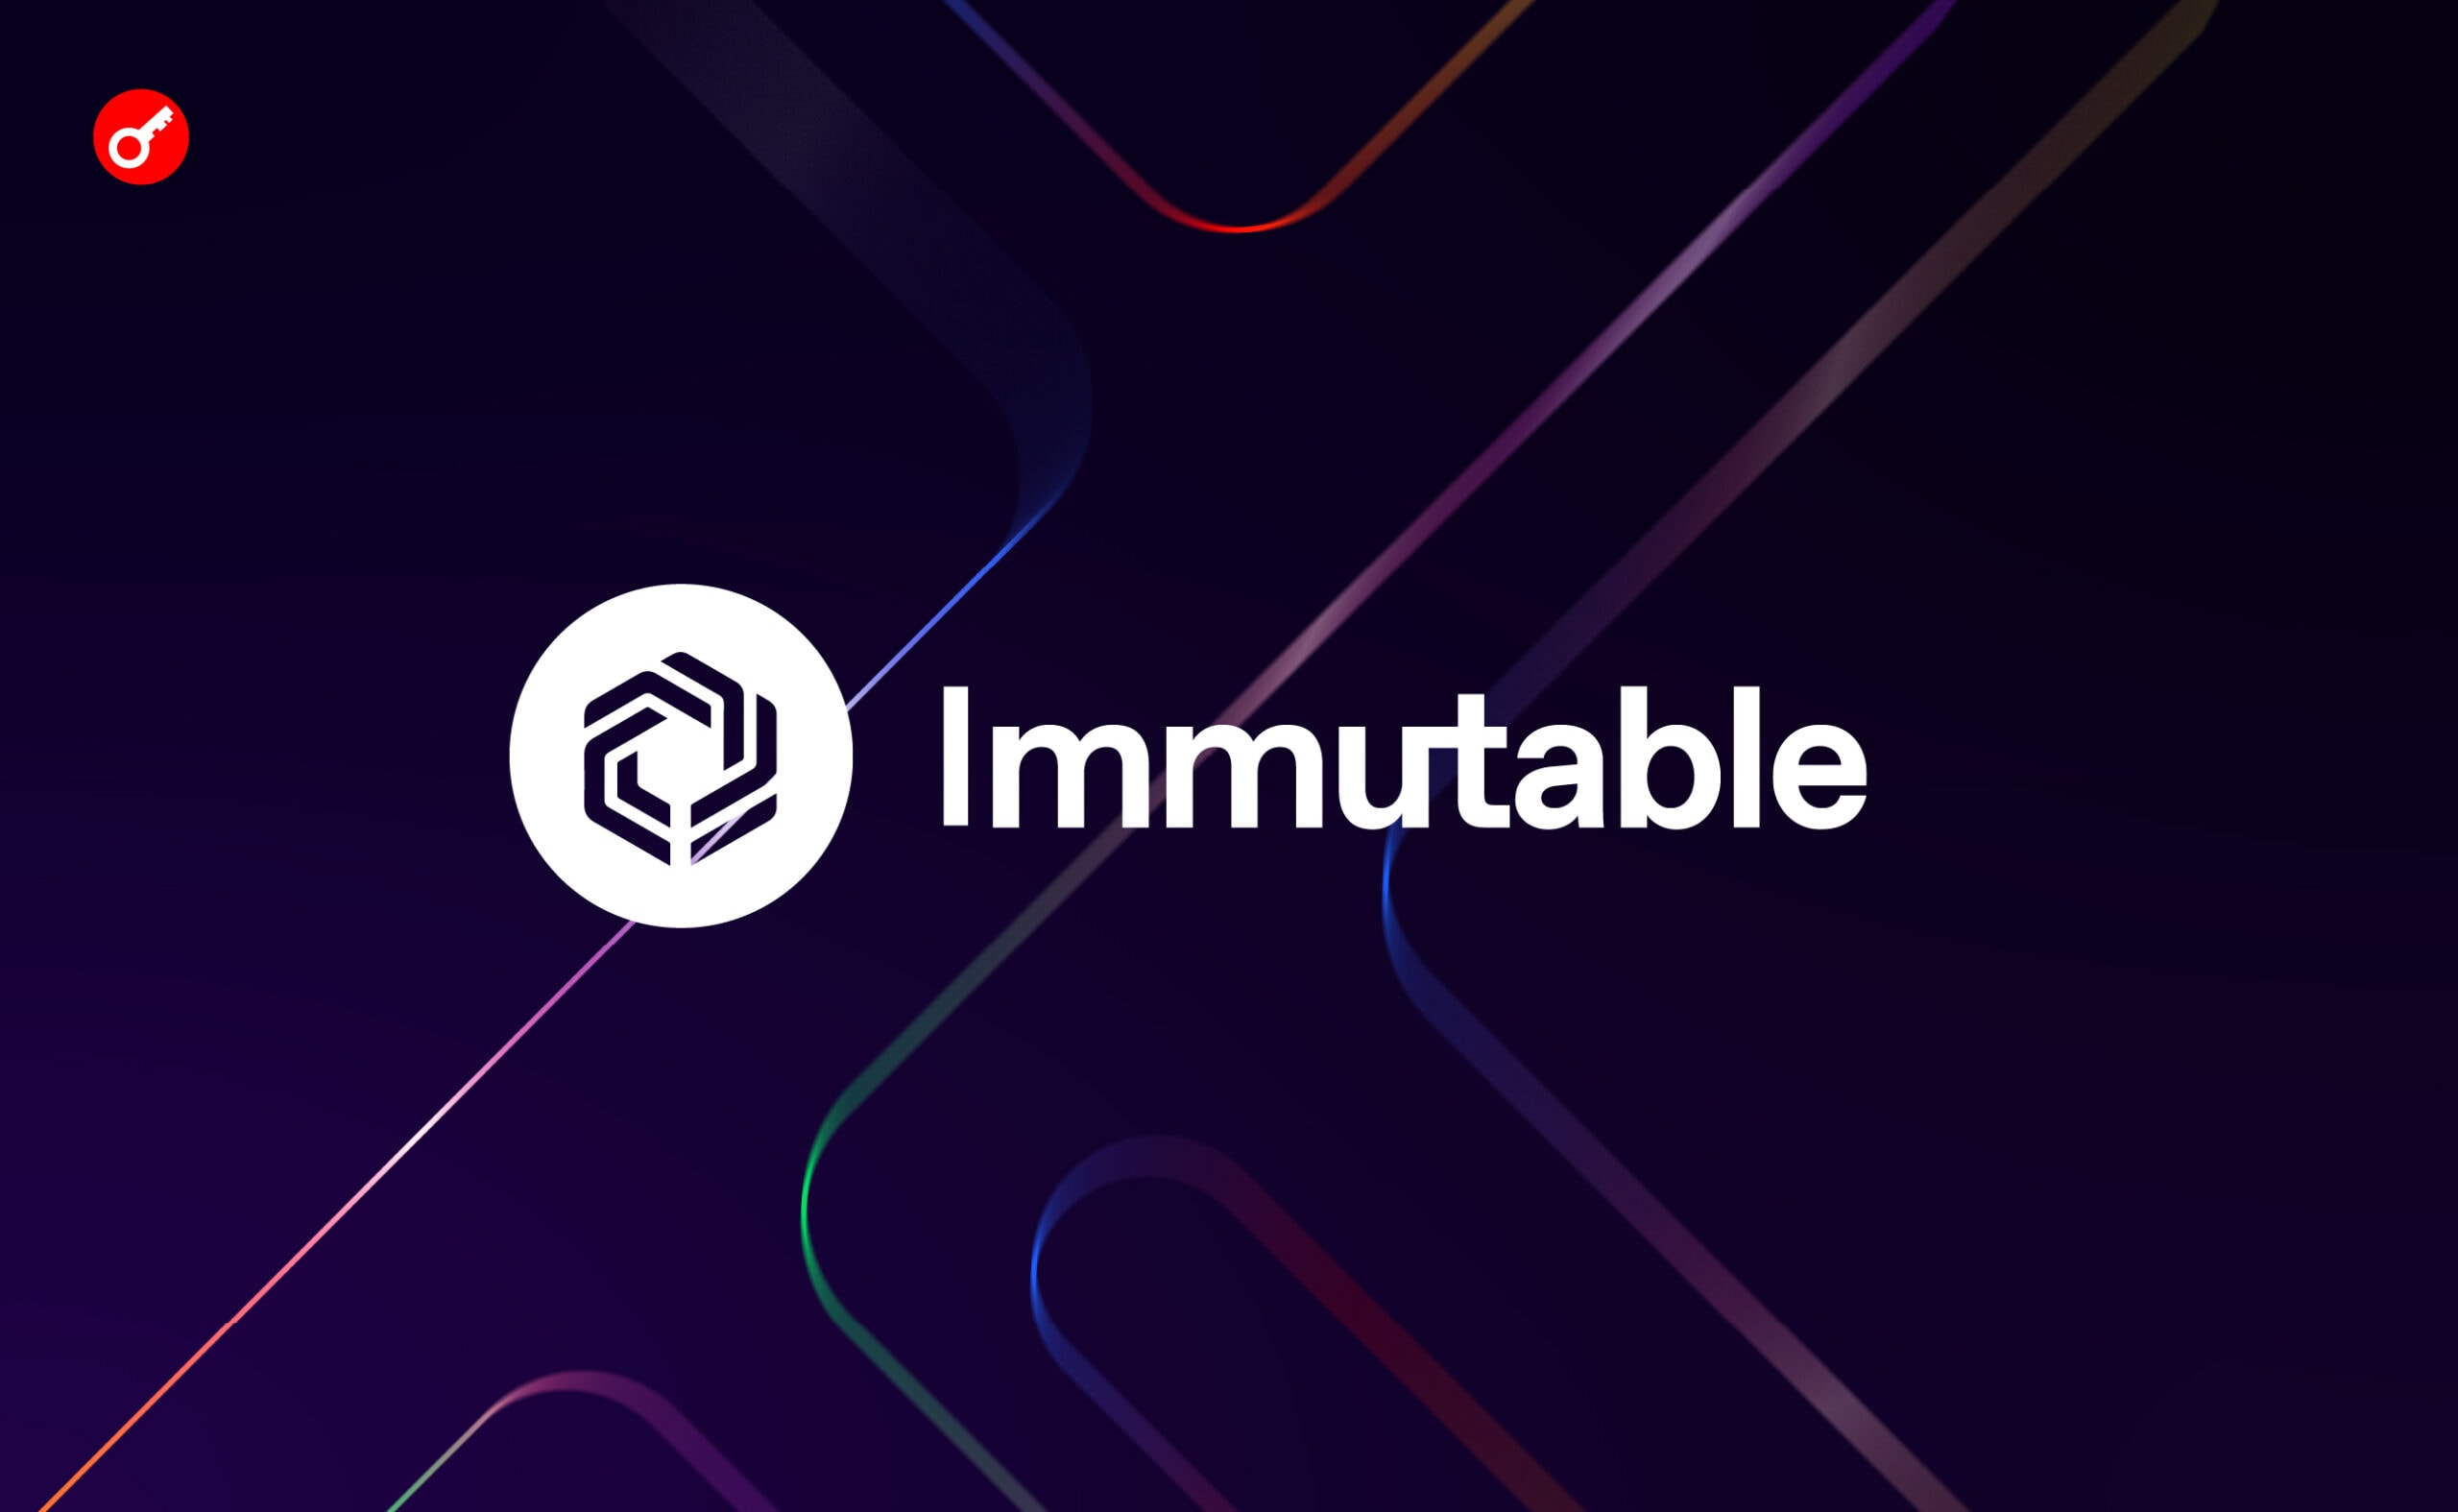 Immutable запустила программу вознаграждений для игроков на $50 млн. Заглавный коллаж новости.